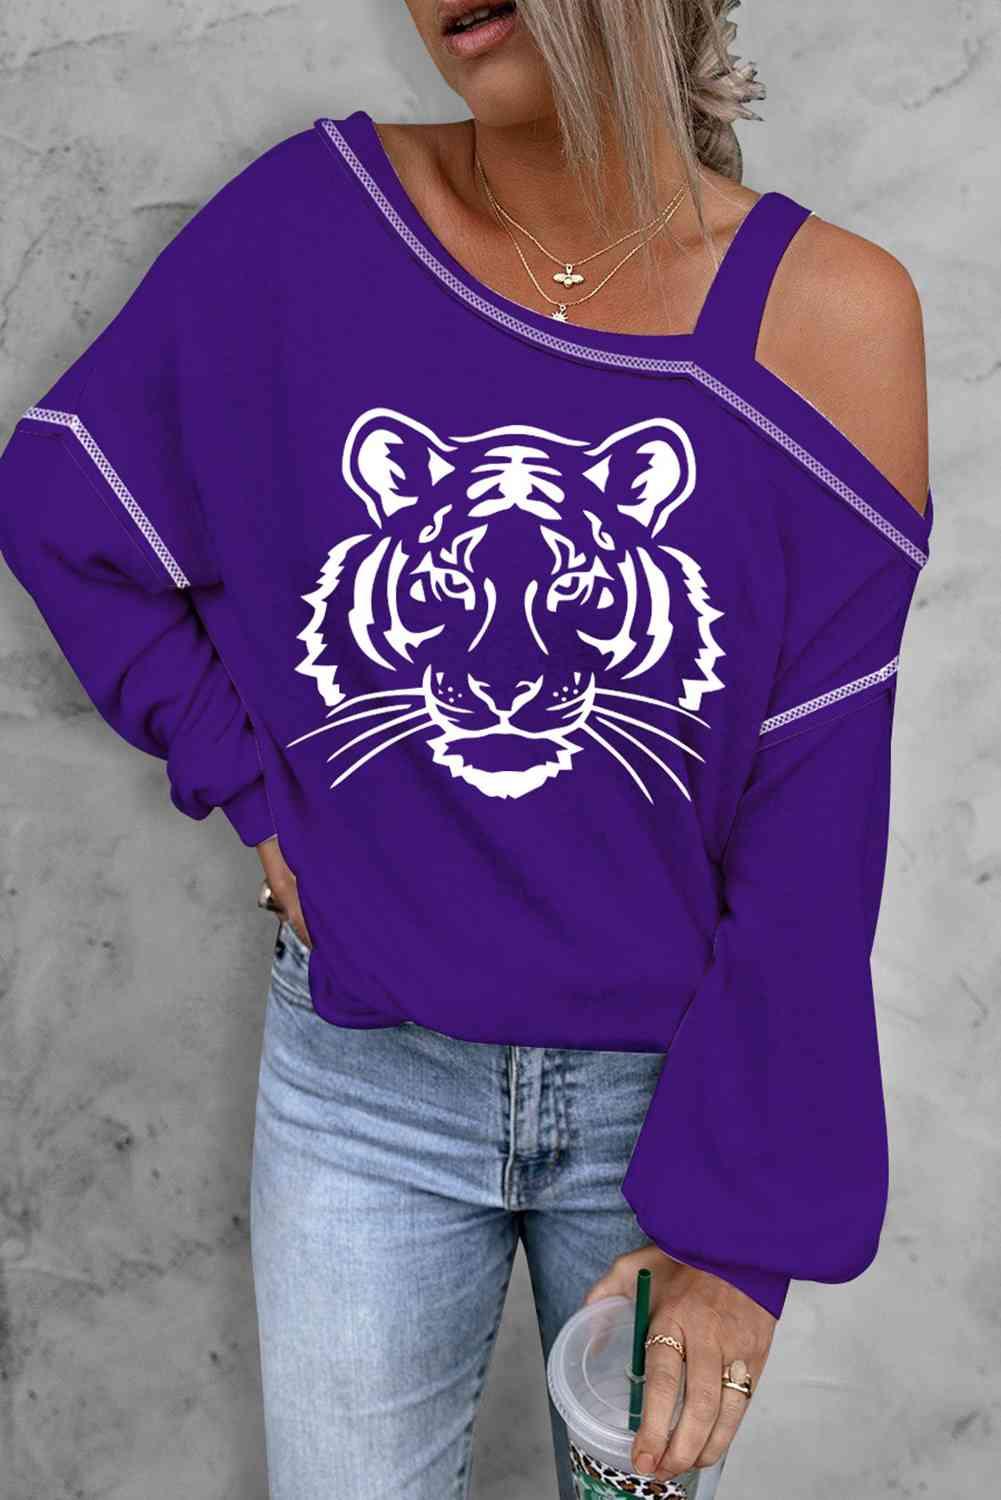 a woman wearing a purple tiger sweatshirt